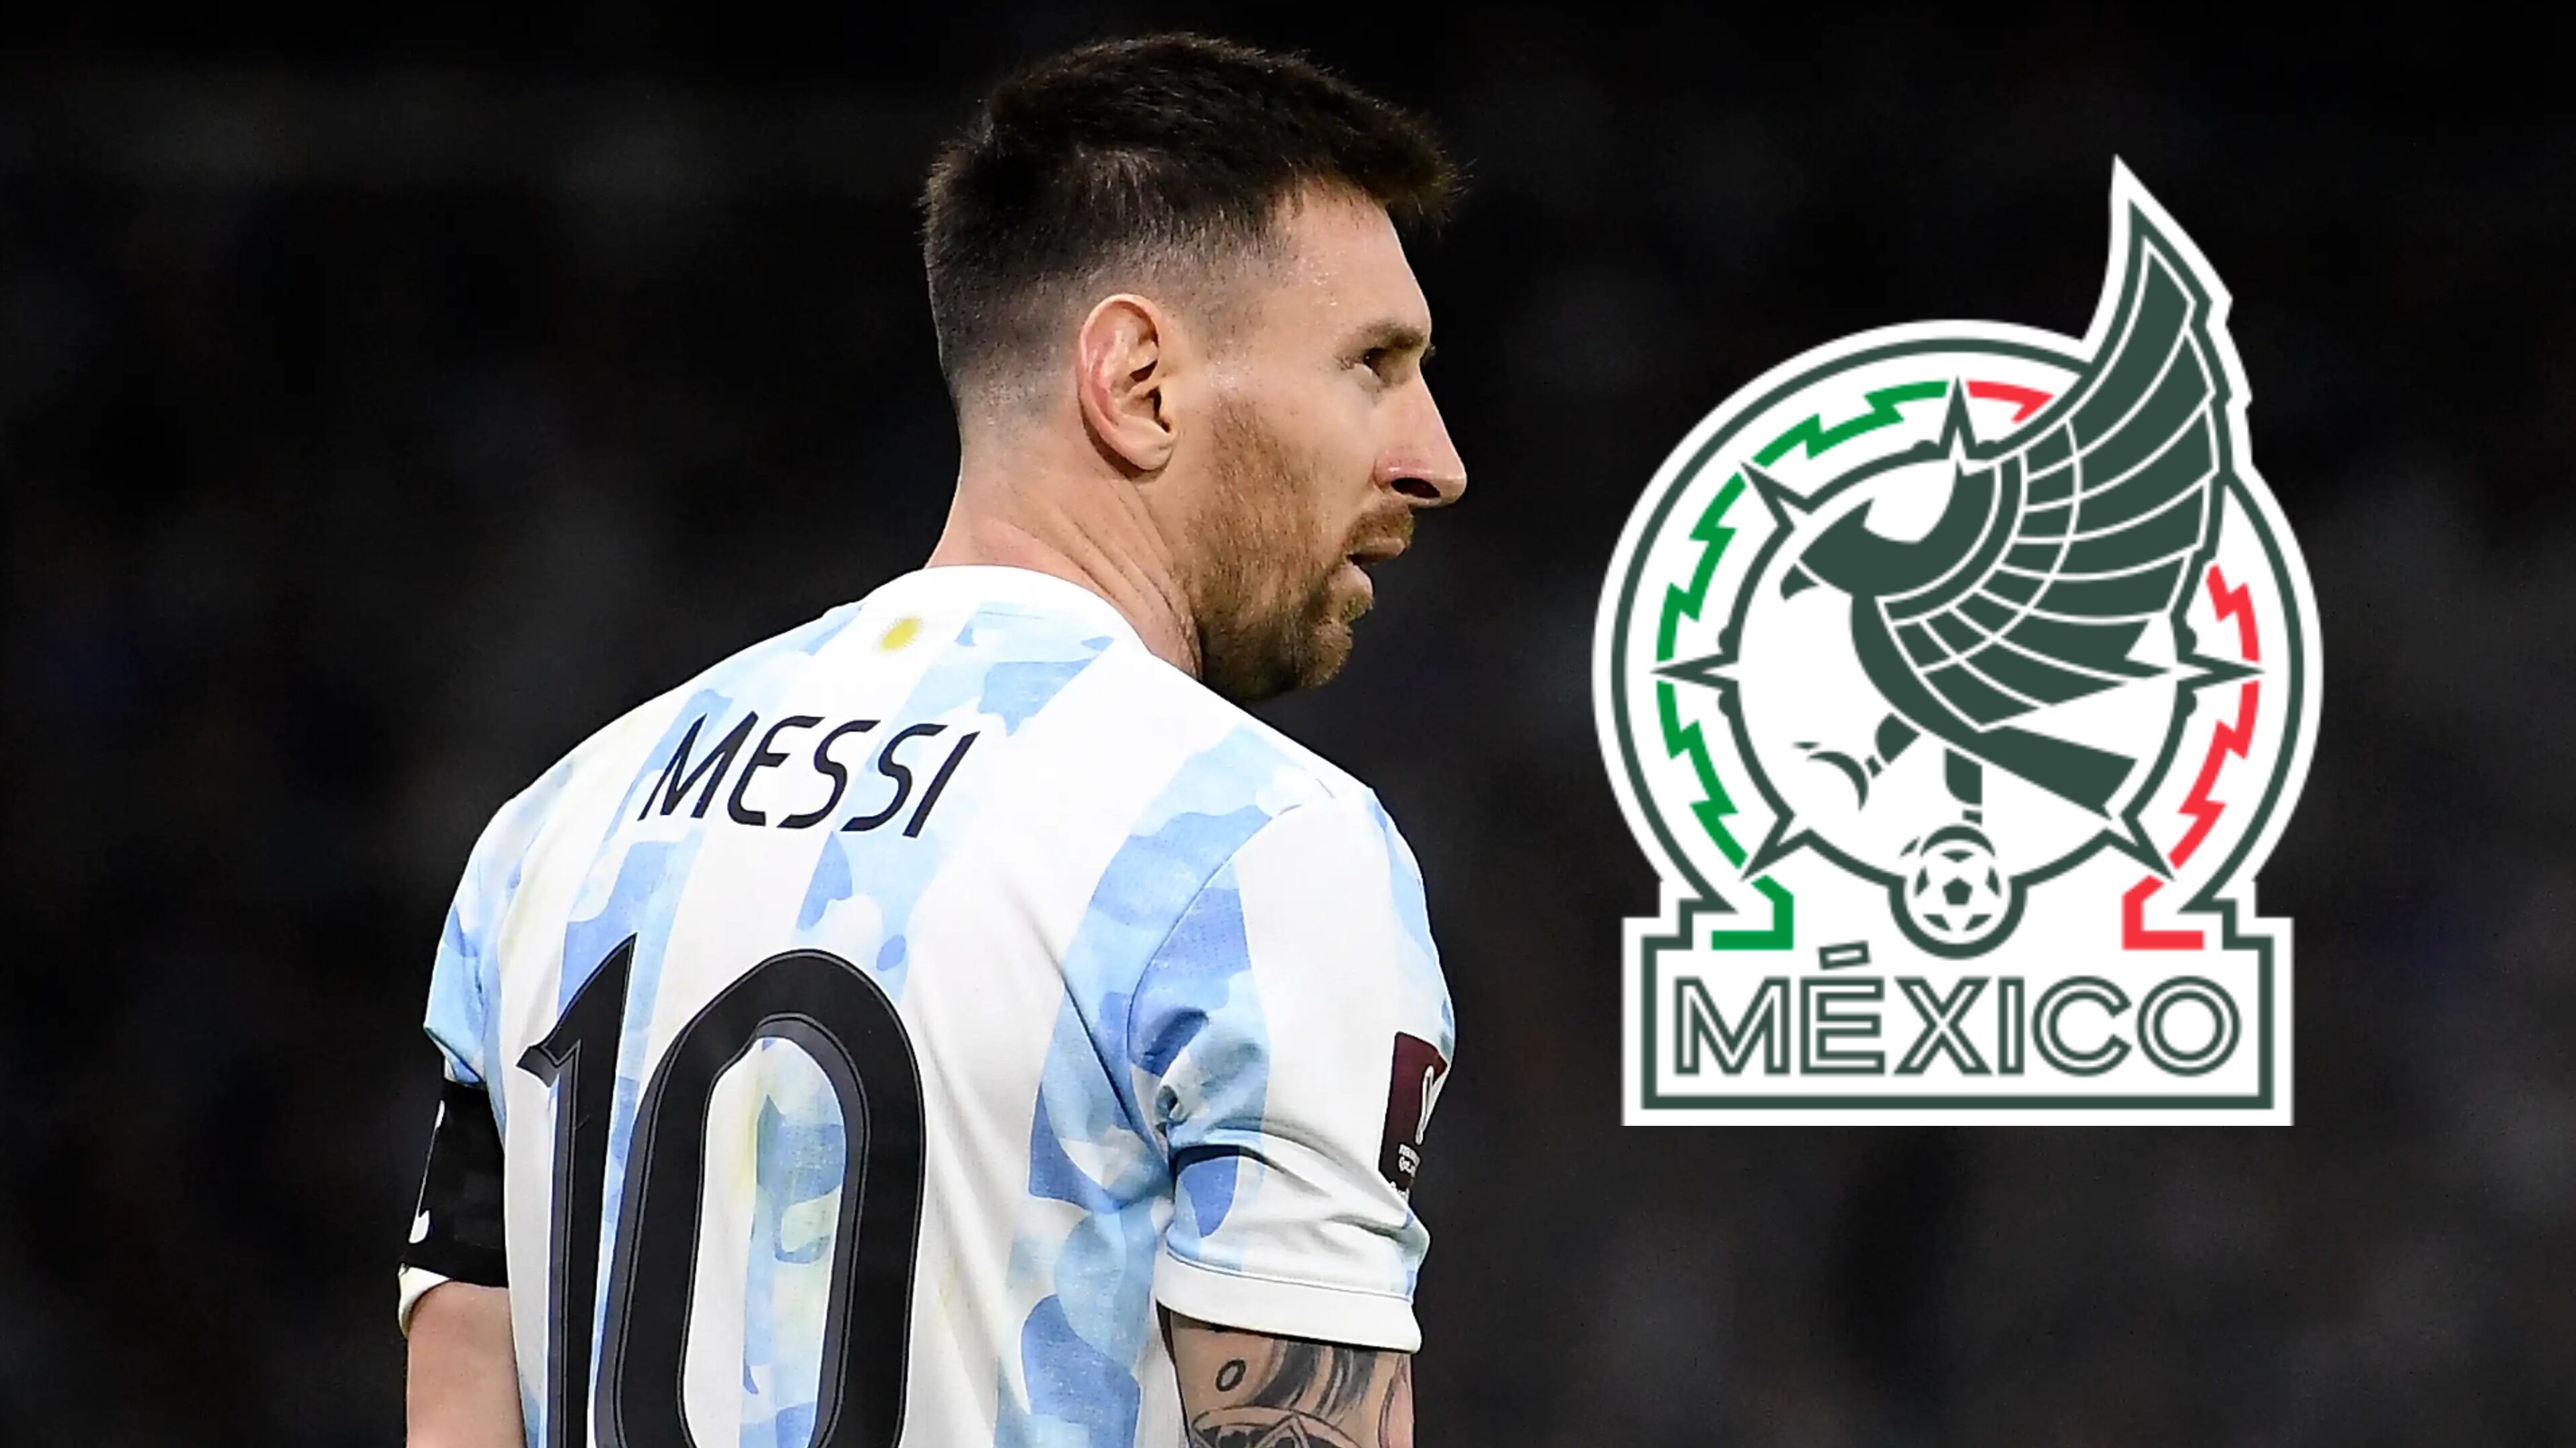 Iba a ser la dupla de Messi, pero renunció a Argentina por México, Lozano feliz